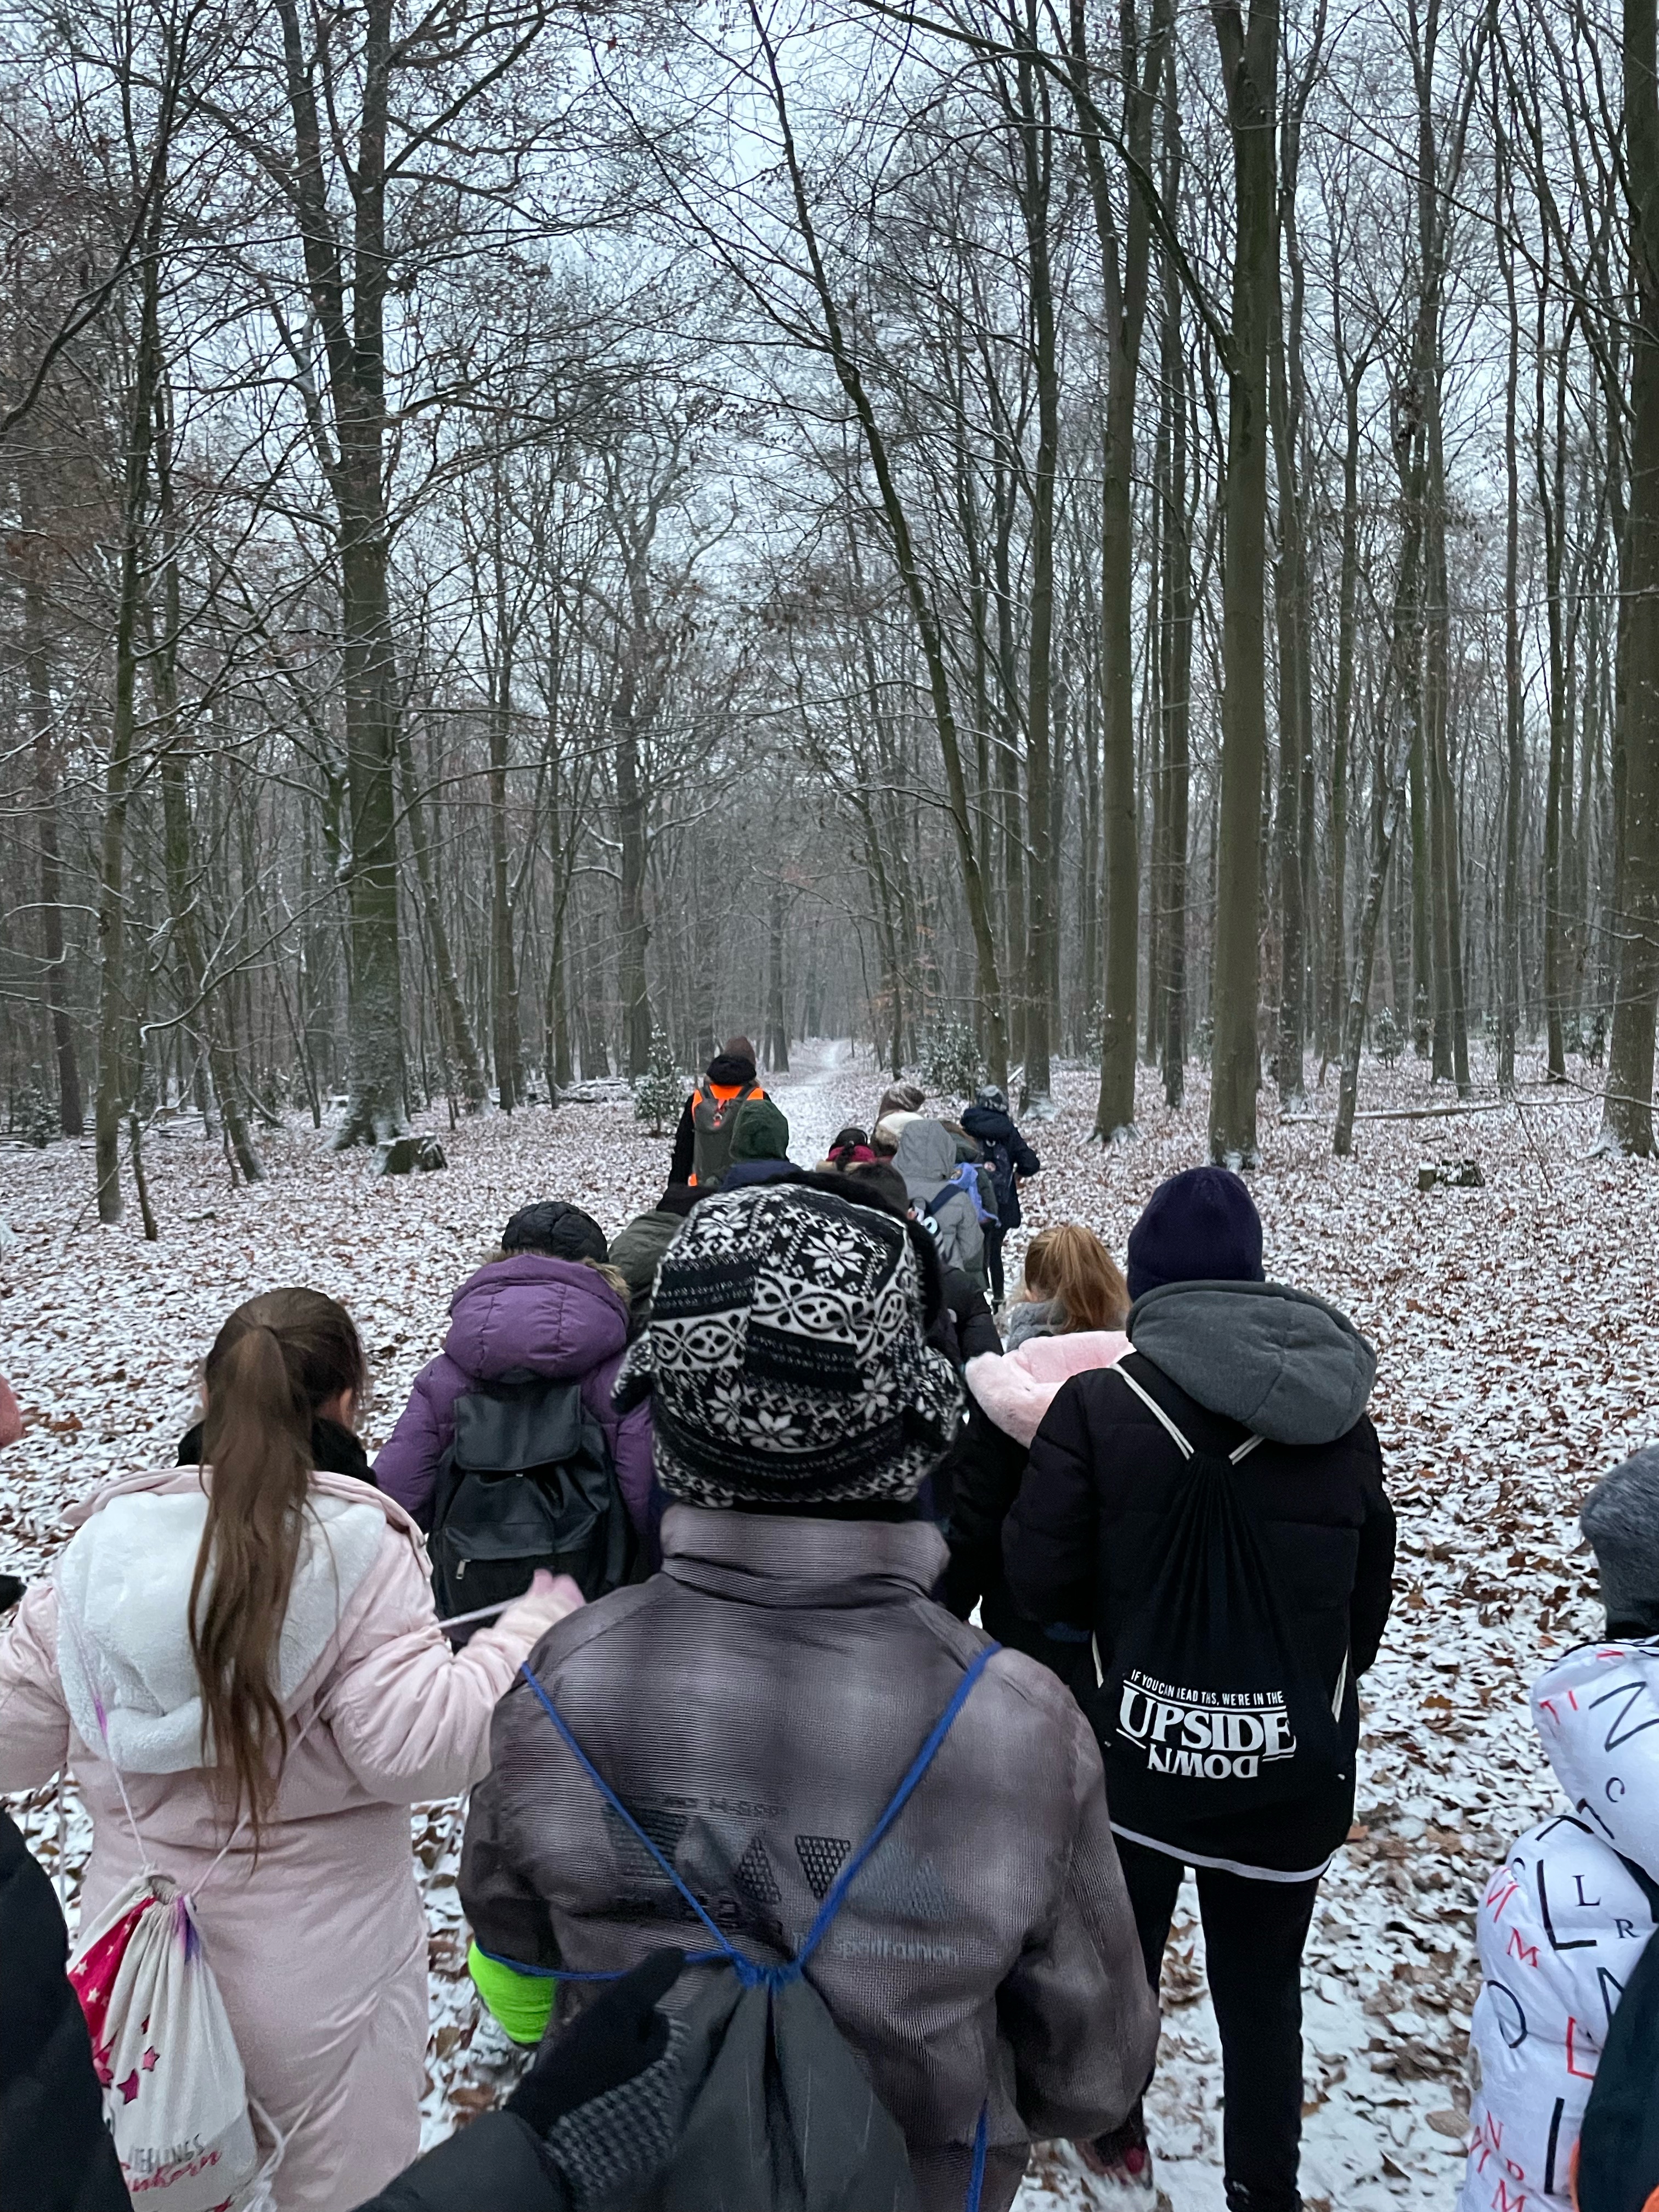 Auf dem Bild sieht man eine 2-er-Reihe von Kindern, die warm verpackt durch einen leicht verschneiten Wald zum Theater laufen. 